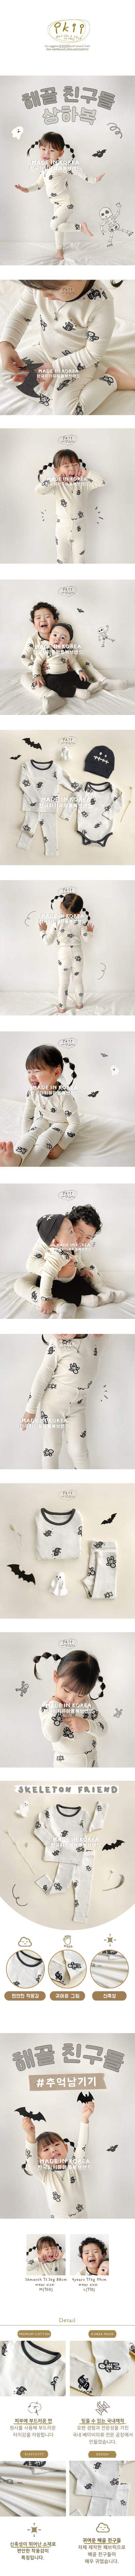 Ikii - Korean Baby Fashion - #babywear - Ghost friend T+B